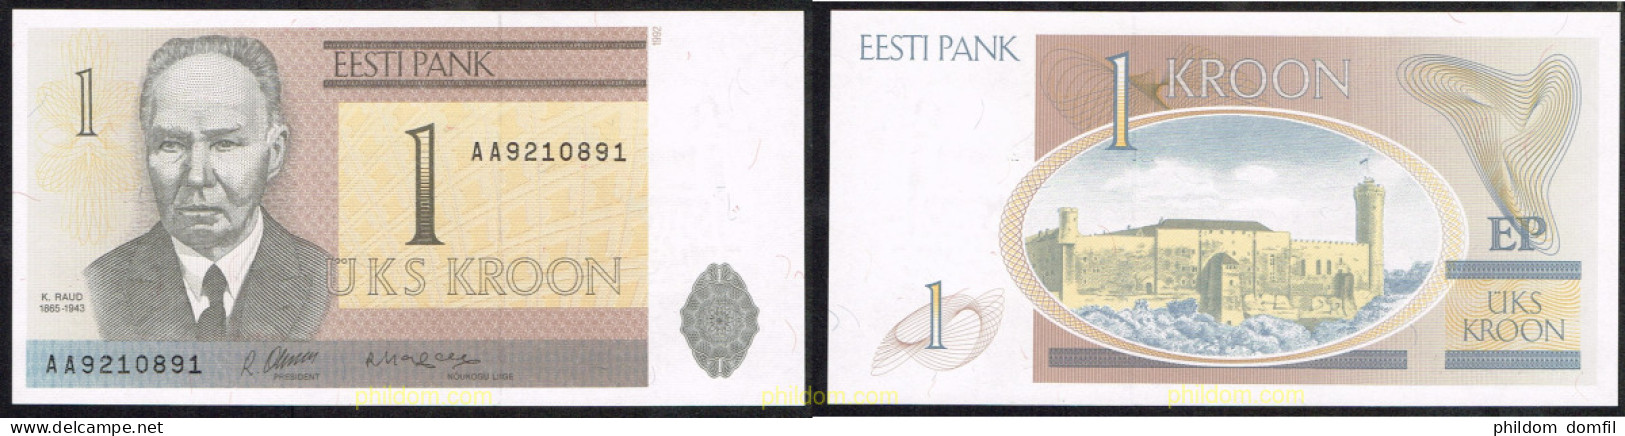 4794 ESTONIA 1992 ESTLAND 1 KROON 1992 - Estland